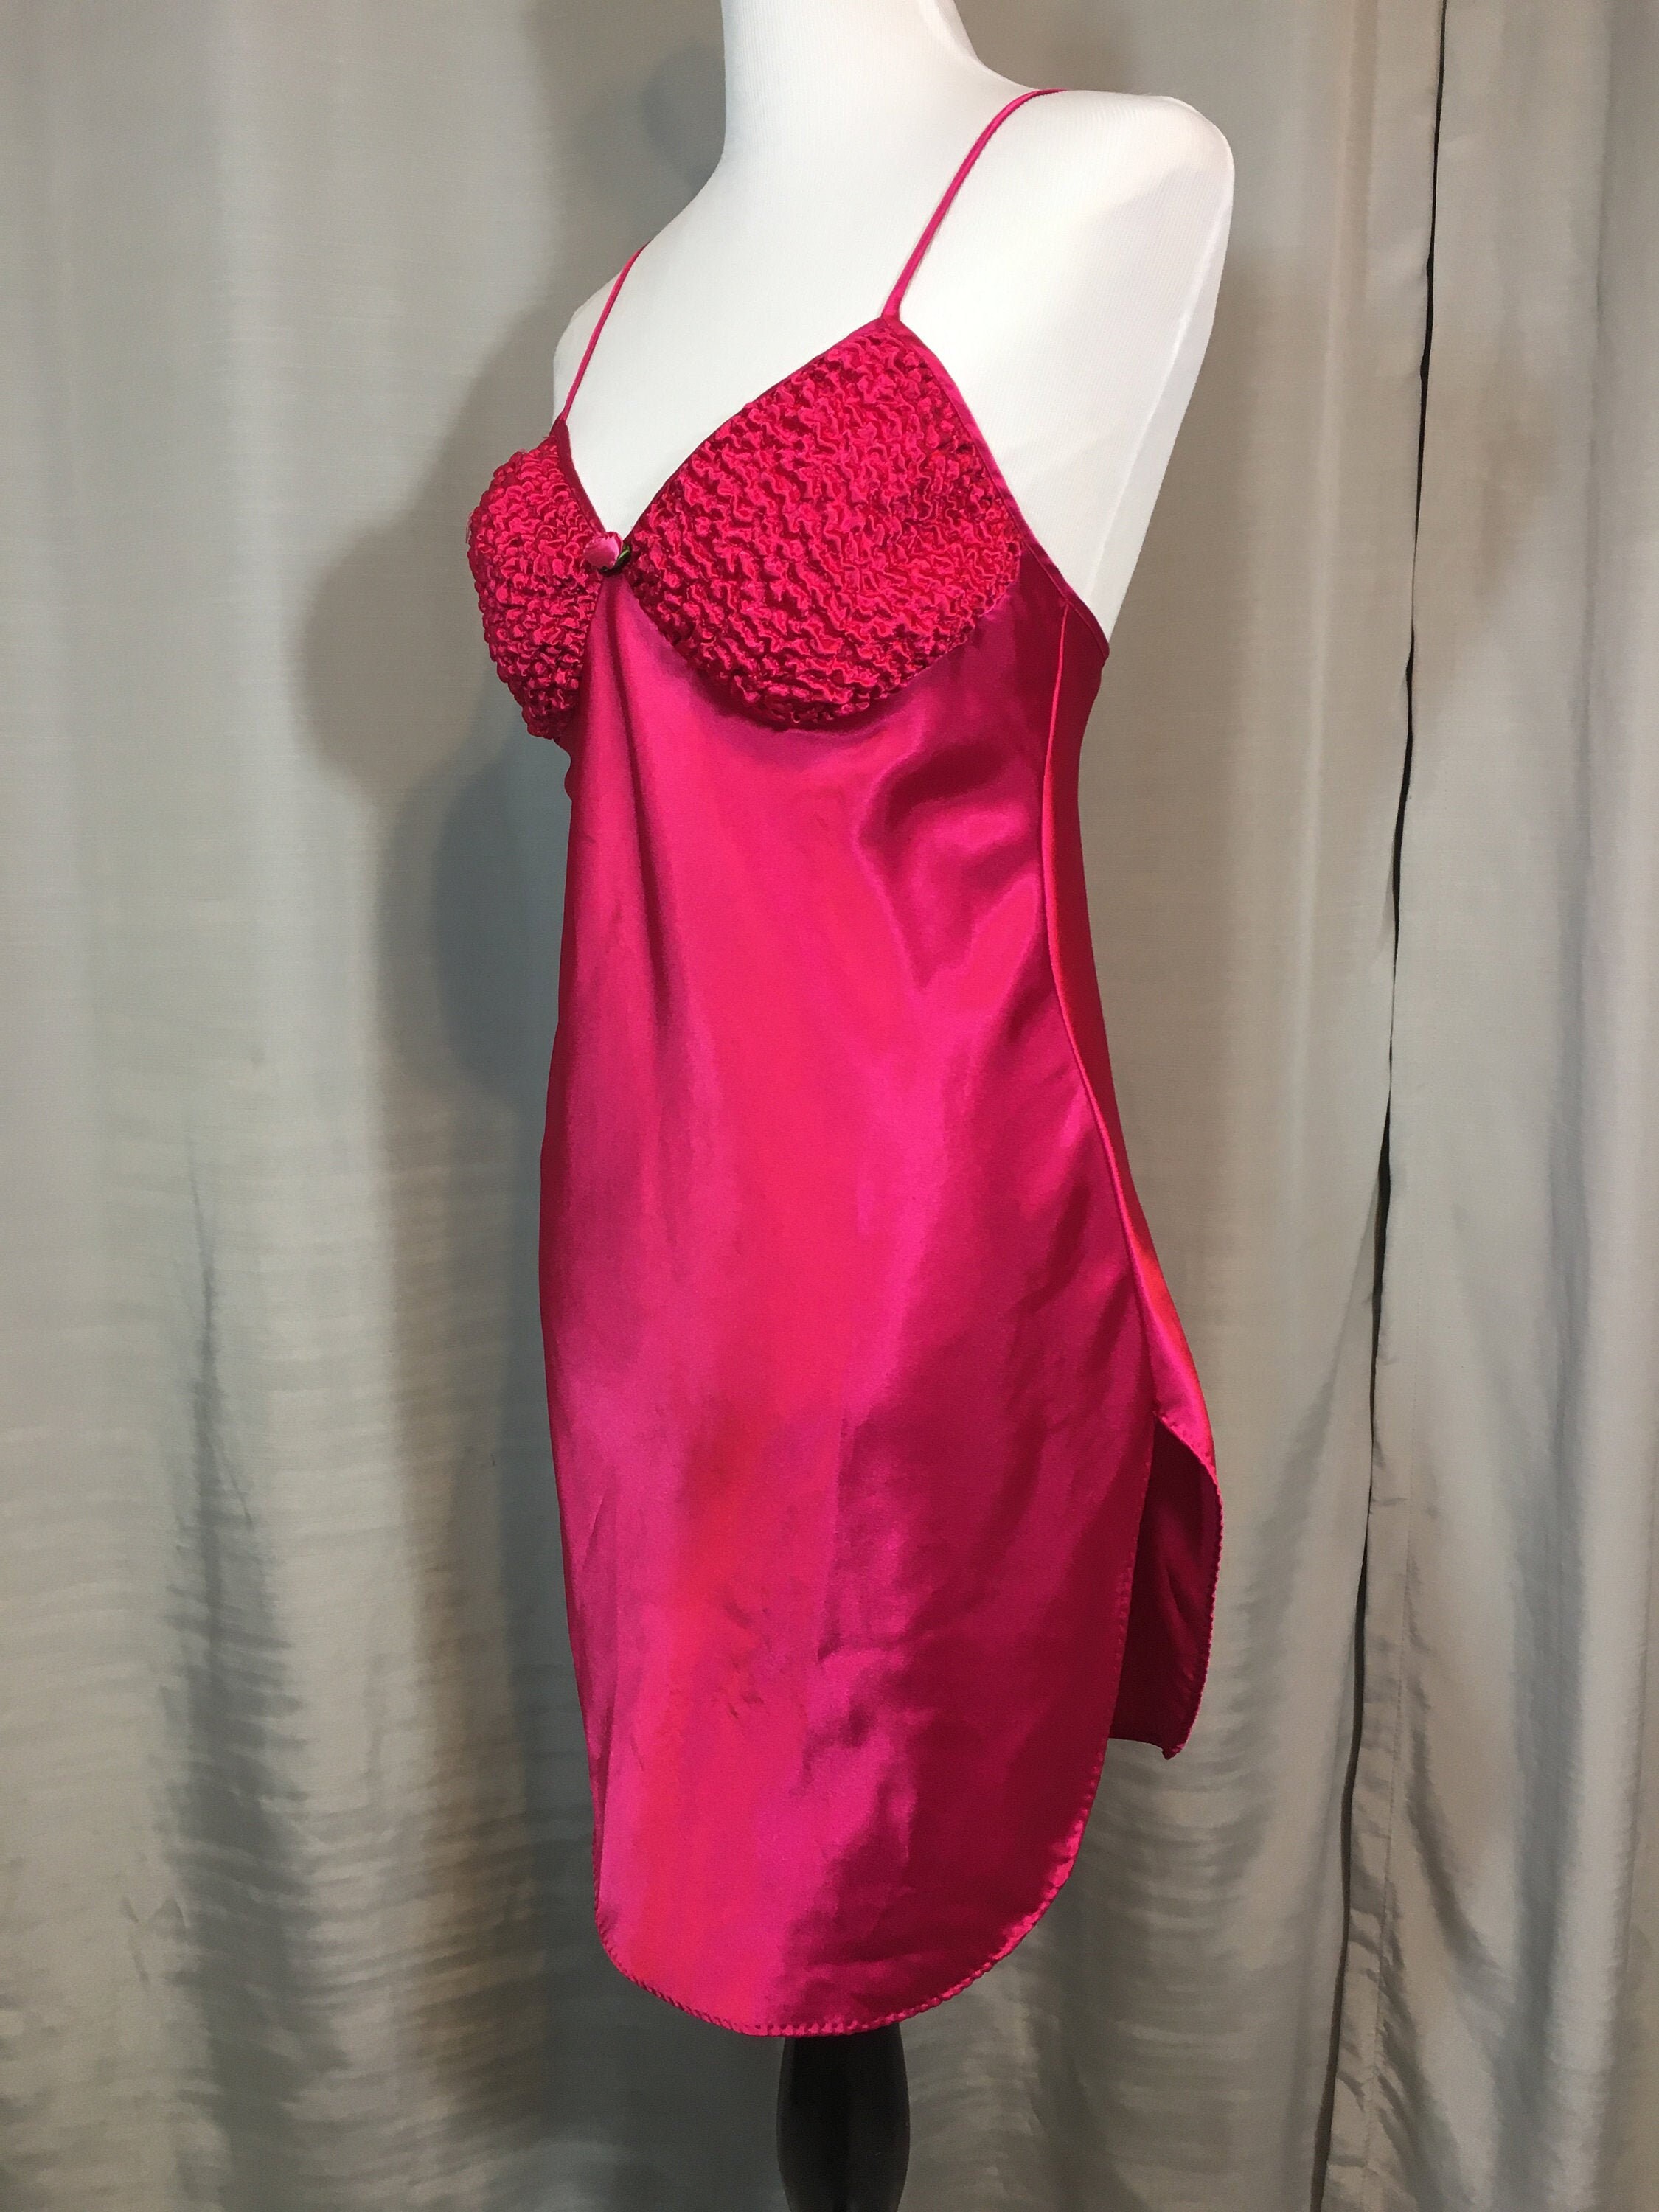 Gossard Gossard Artemis Nightgown Medium Pink Fuchsia Satin Trim Vintage Short Nightie 